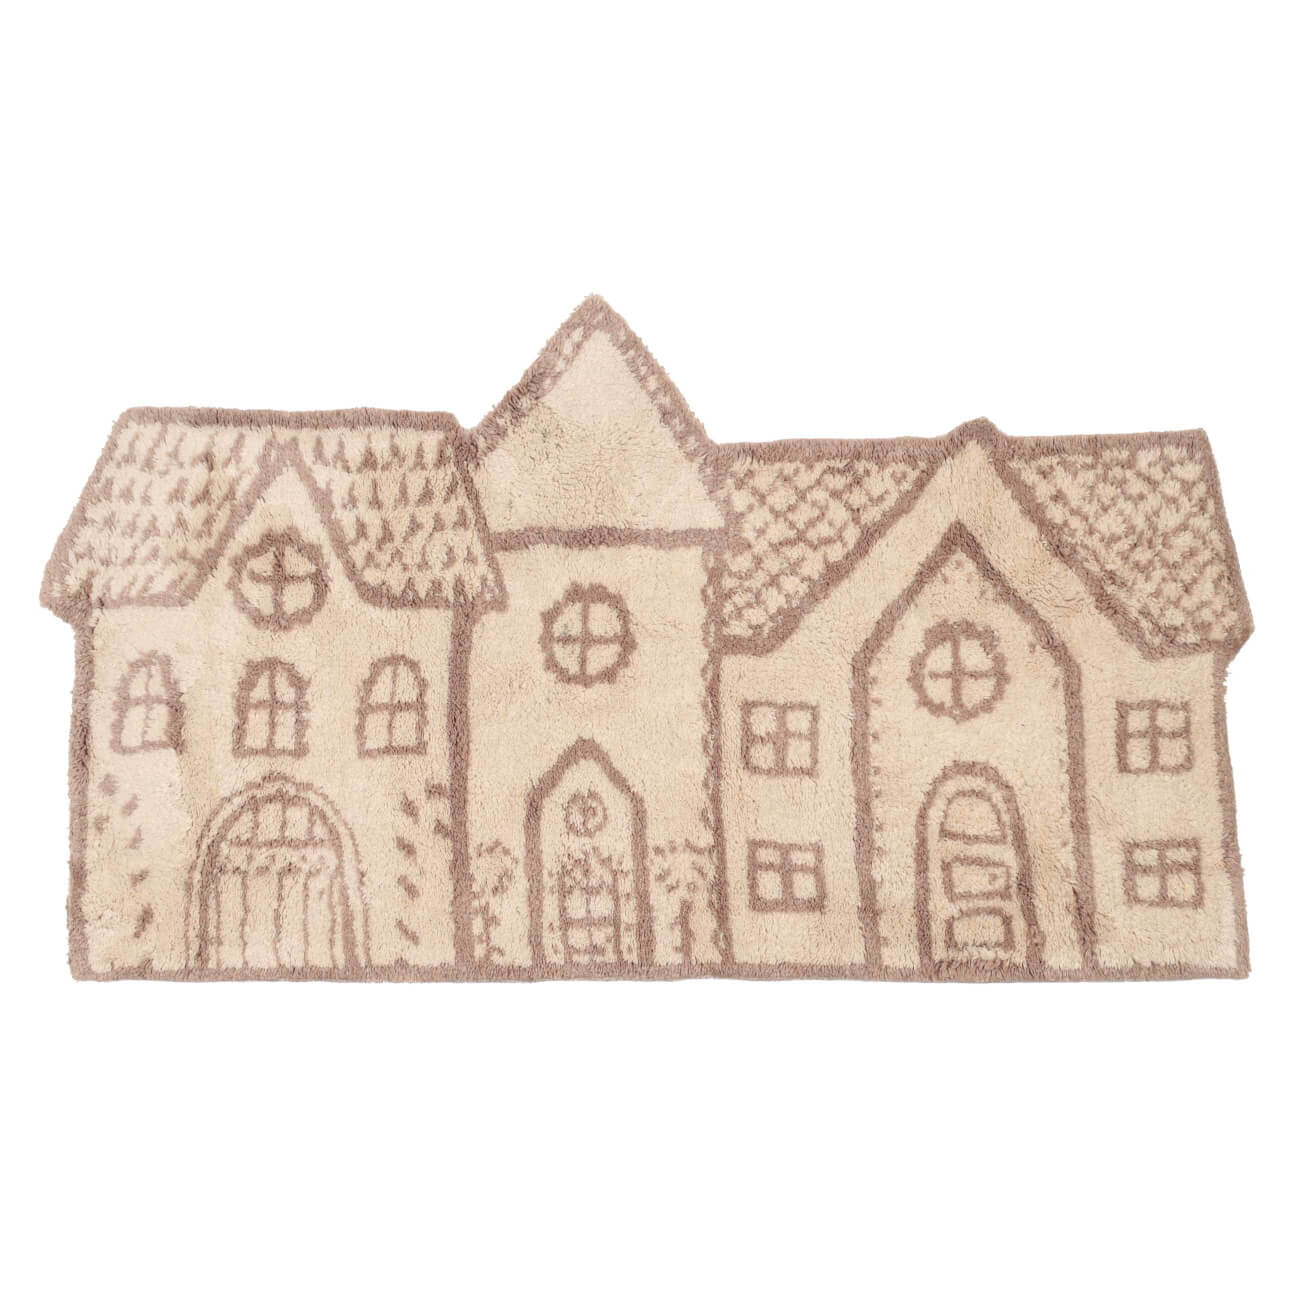 Коврик, 50x80 см, полиэстер, бежево-коричневый, Дома, Frosty sparks изображение № 1